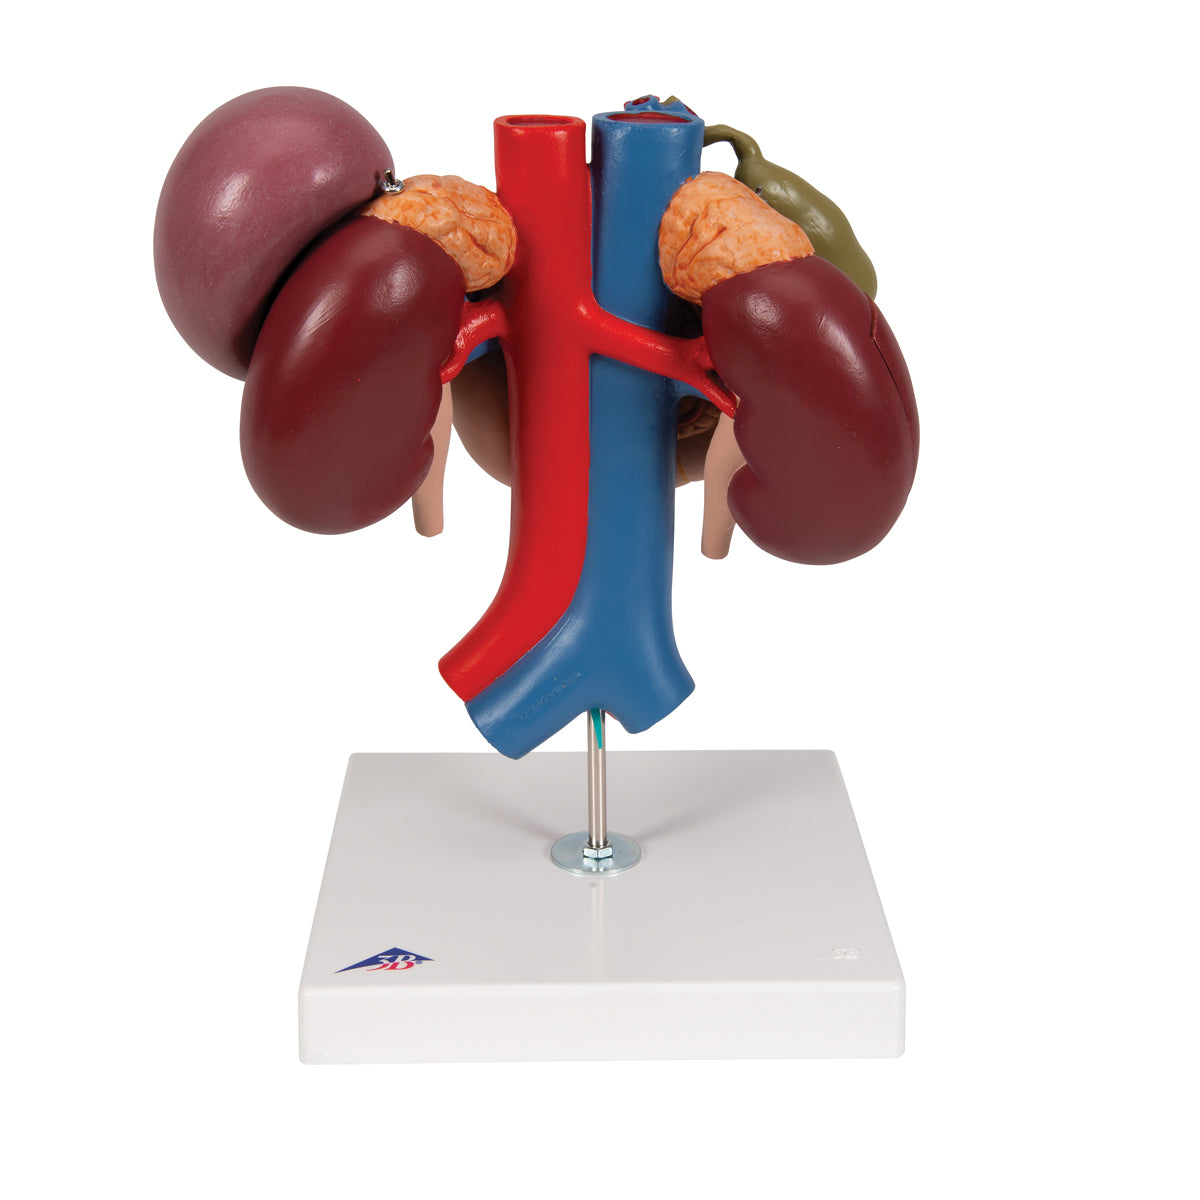 Detaljerad modell av tolvfingertarmen och förhållandet mellan bukspottkörteln och andra organ - kan separeras i 3 delar